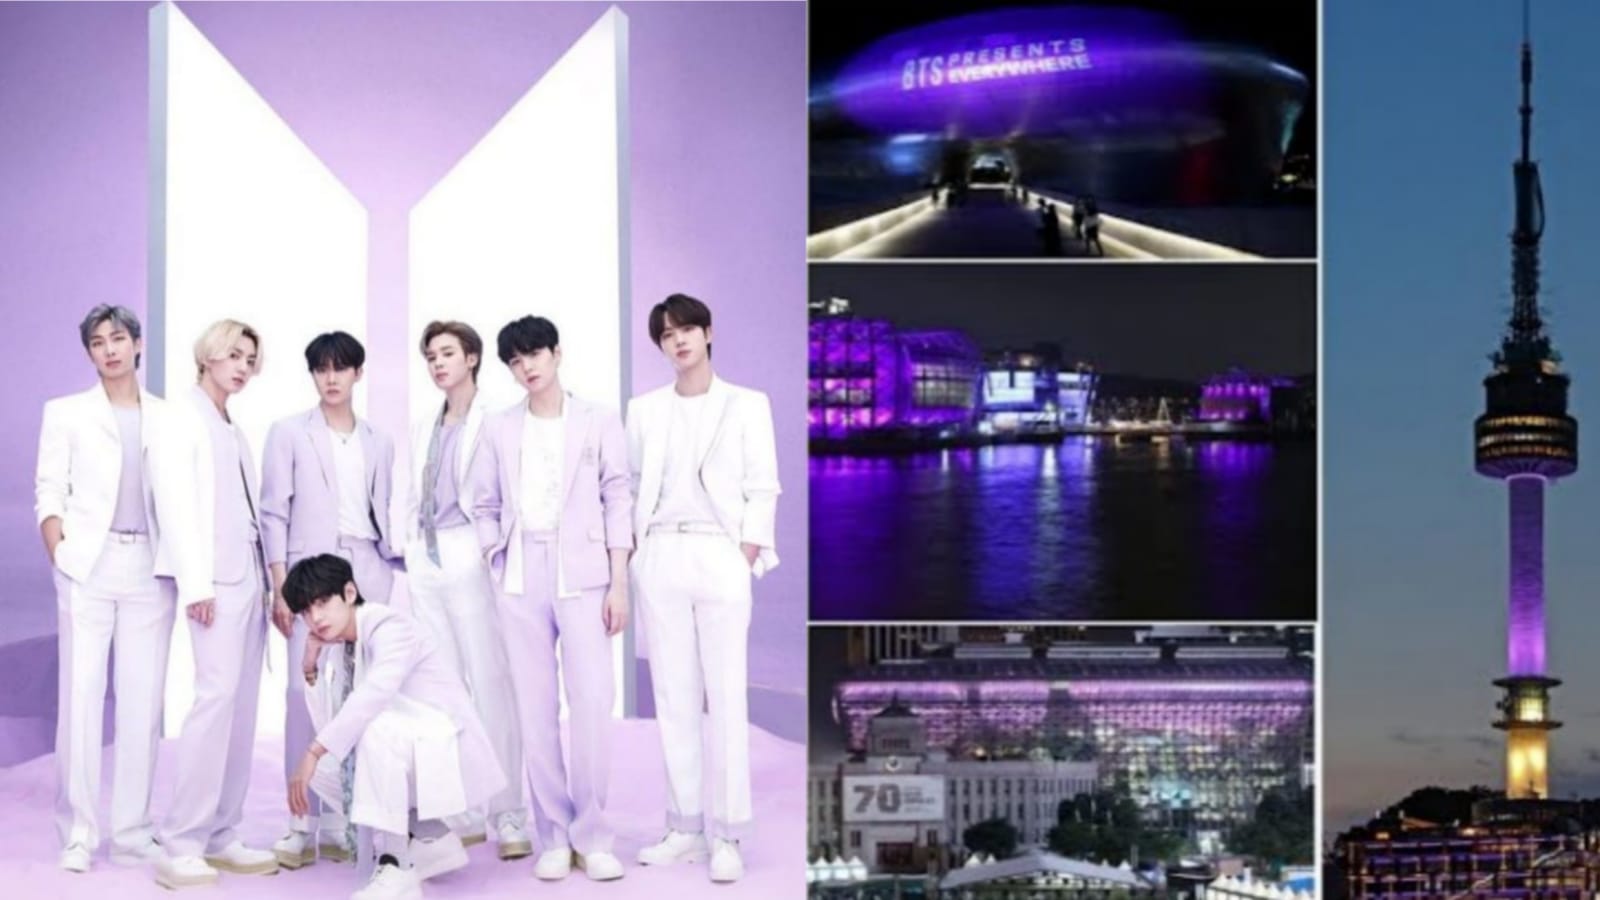 Rayakan Ulang Tahun BTS ke-10, Kota Seoul Berubah Menjadi Warna Ungu